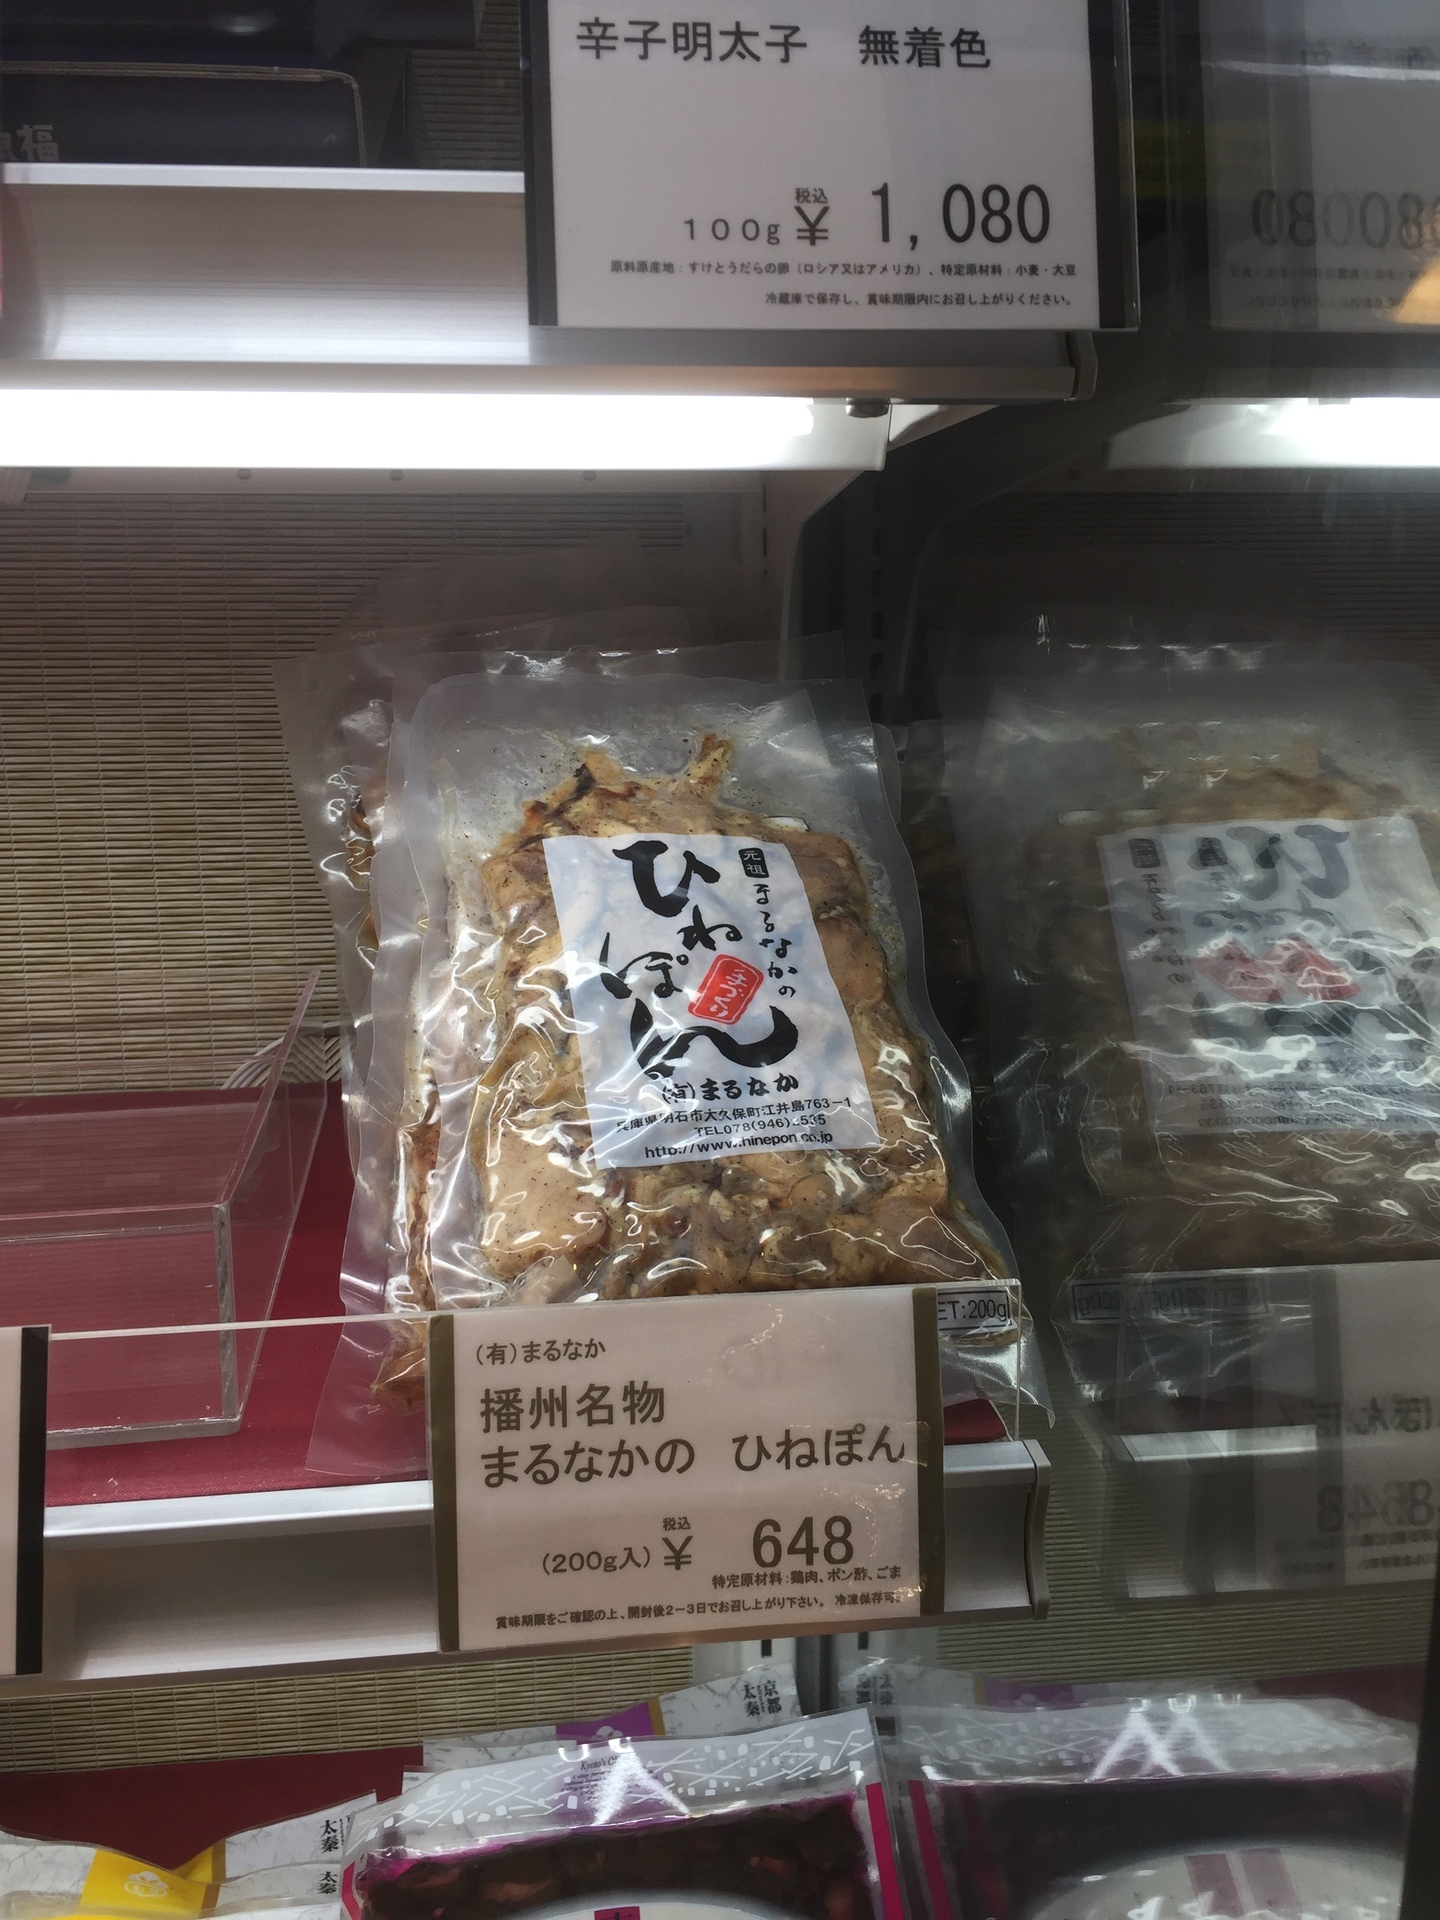 新大阪駅で発見 ひねぽん 明石の幸せいっぱいのおすすめグルメランチ 土産